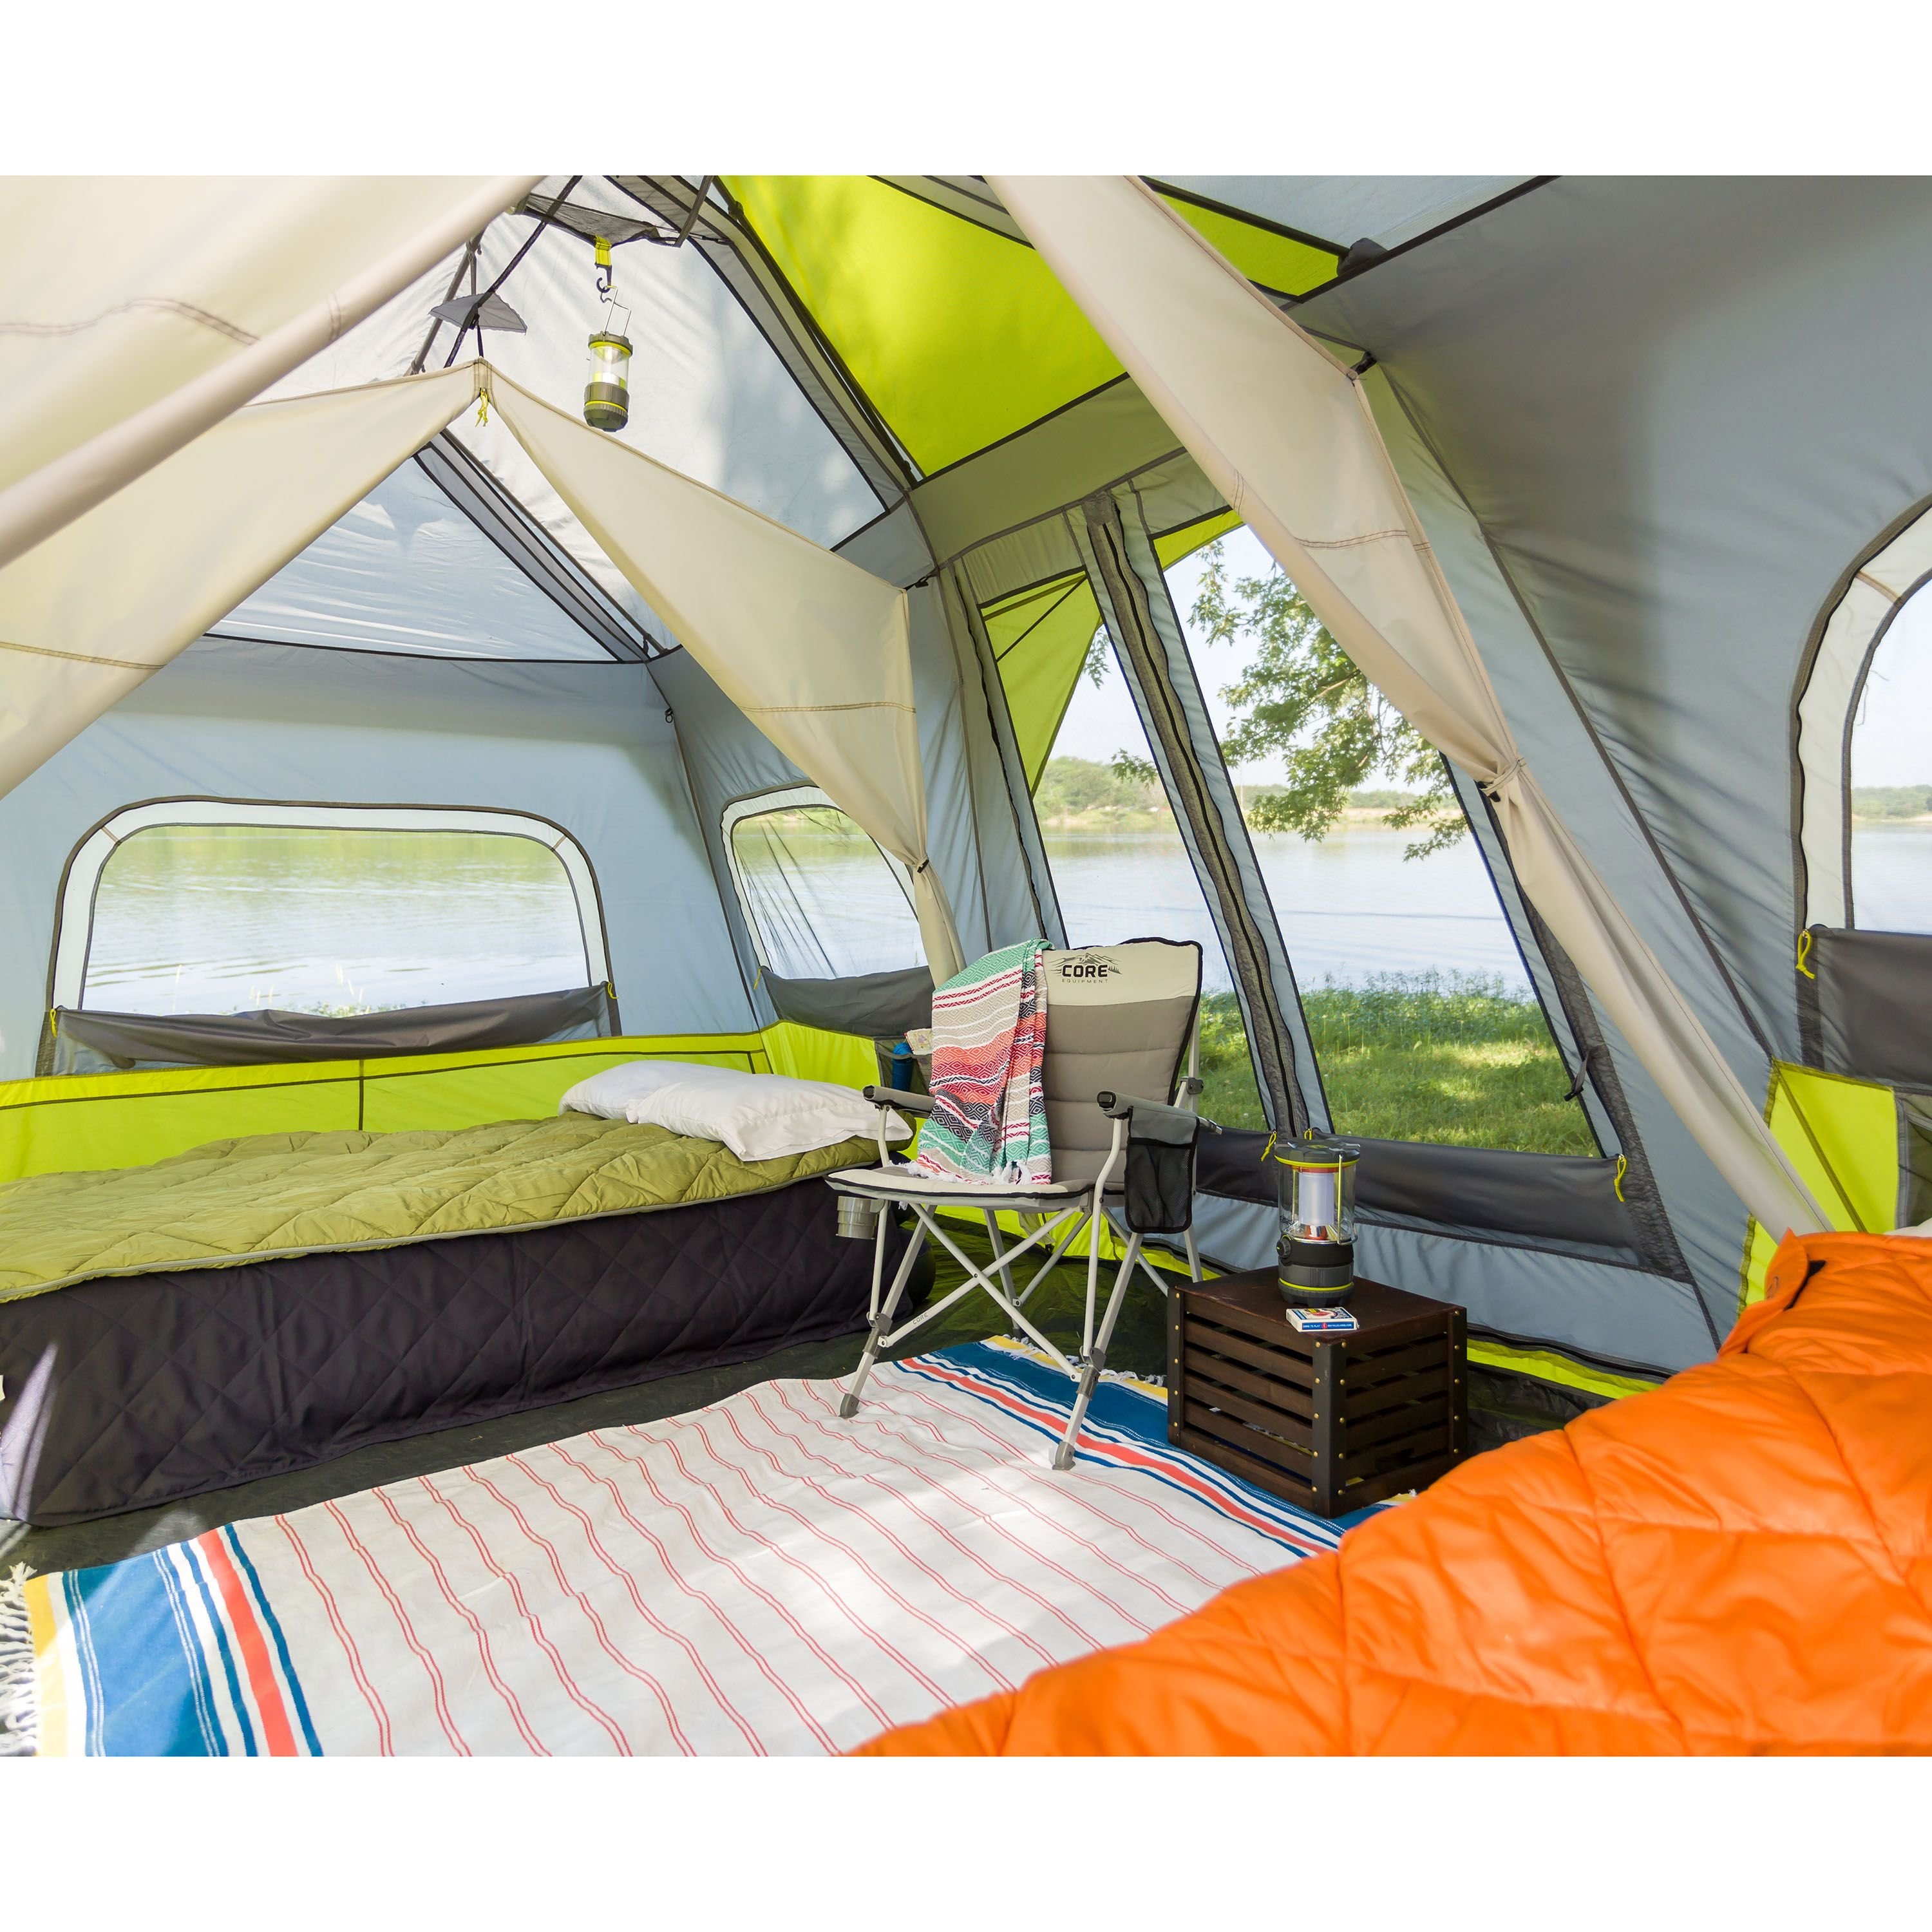 Camping with extend. Палатка кемпинг домик зеленый xyp602. Палатка Camping Tents 2905. Палатка best Camp minilight. Обустройство кемпинговой палатки.